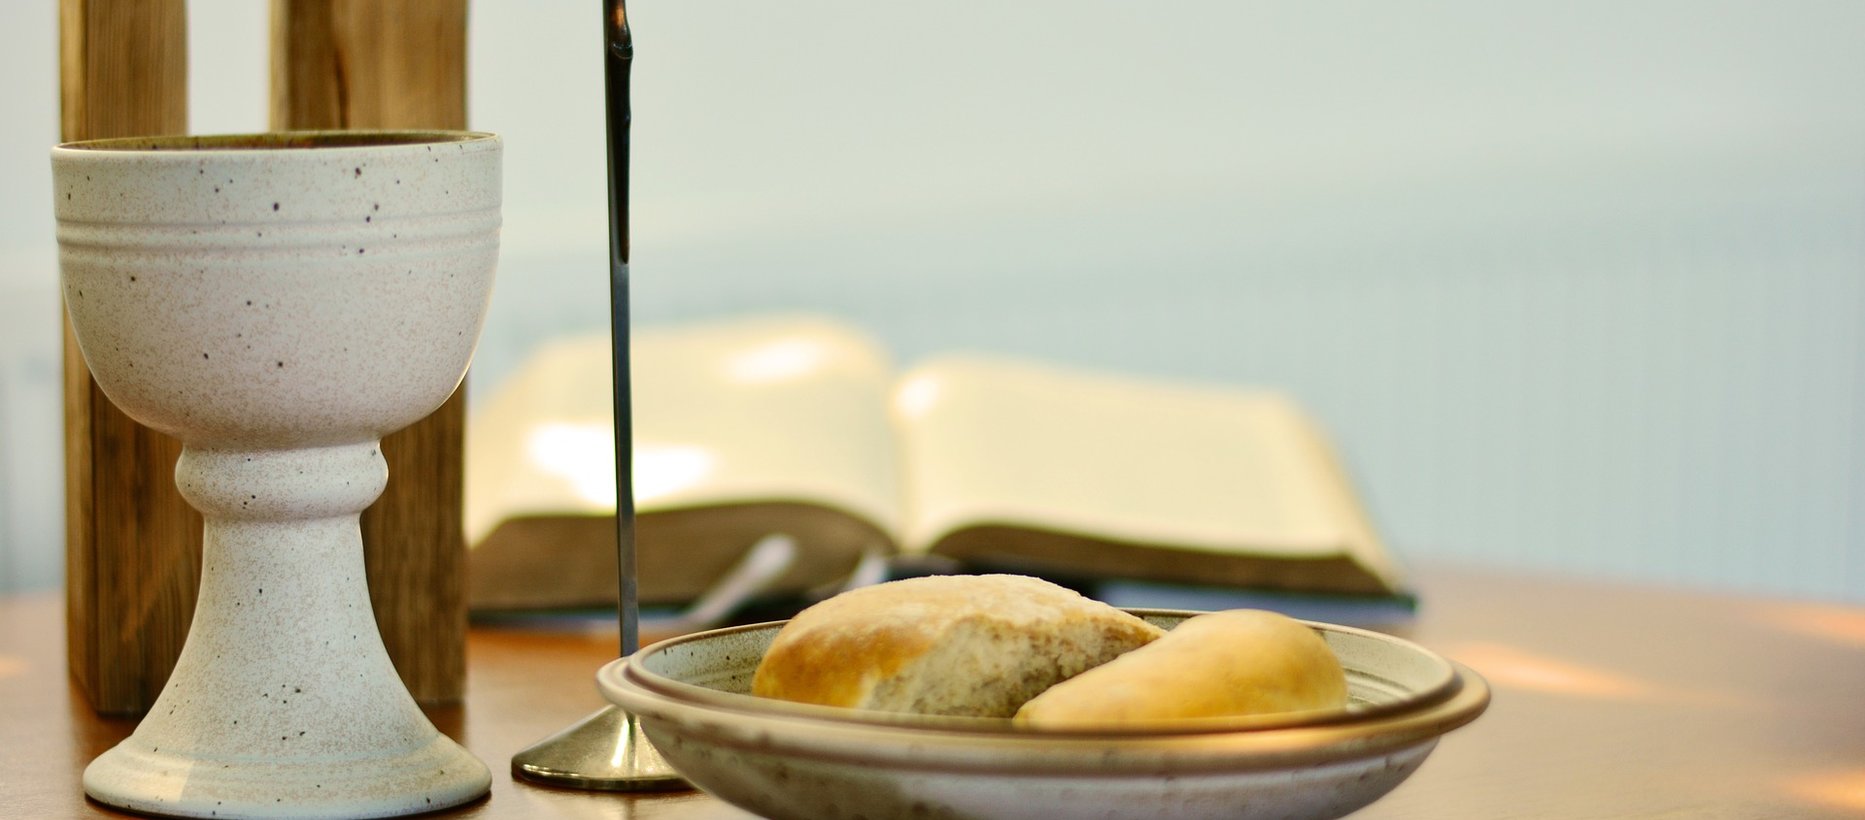 Ehtoollispikari, ehtoollisleipä ja raamattu lähikuvassa pöydällä